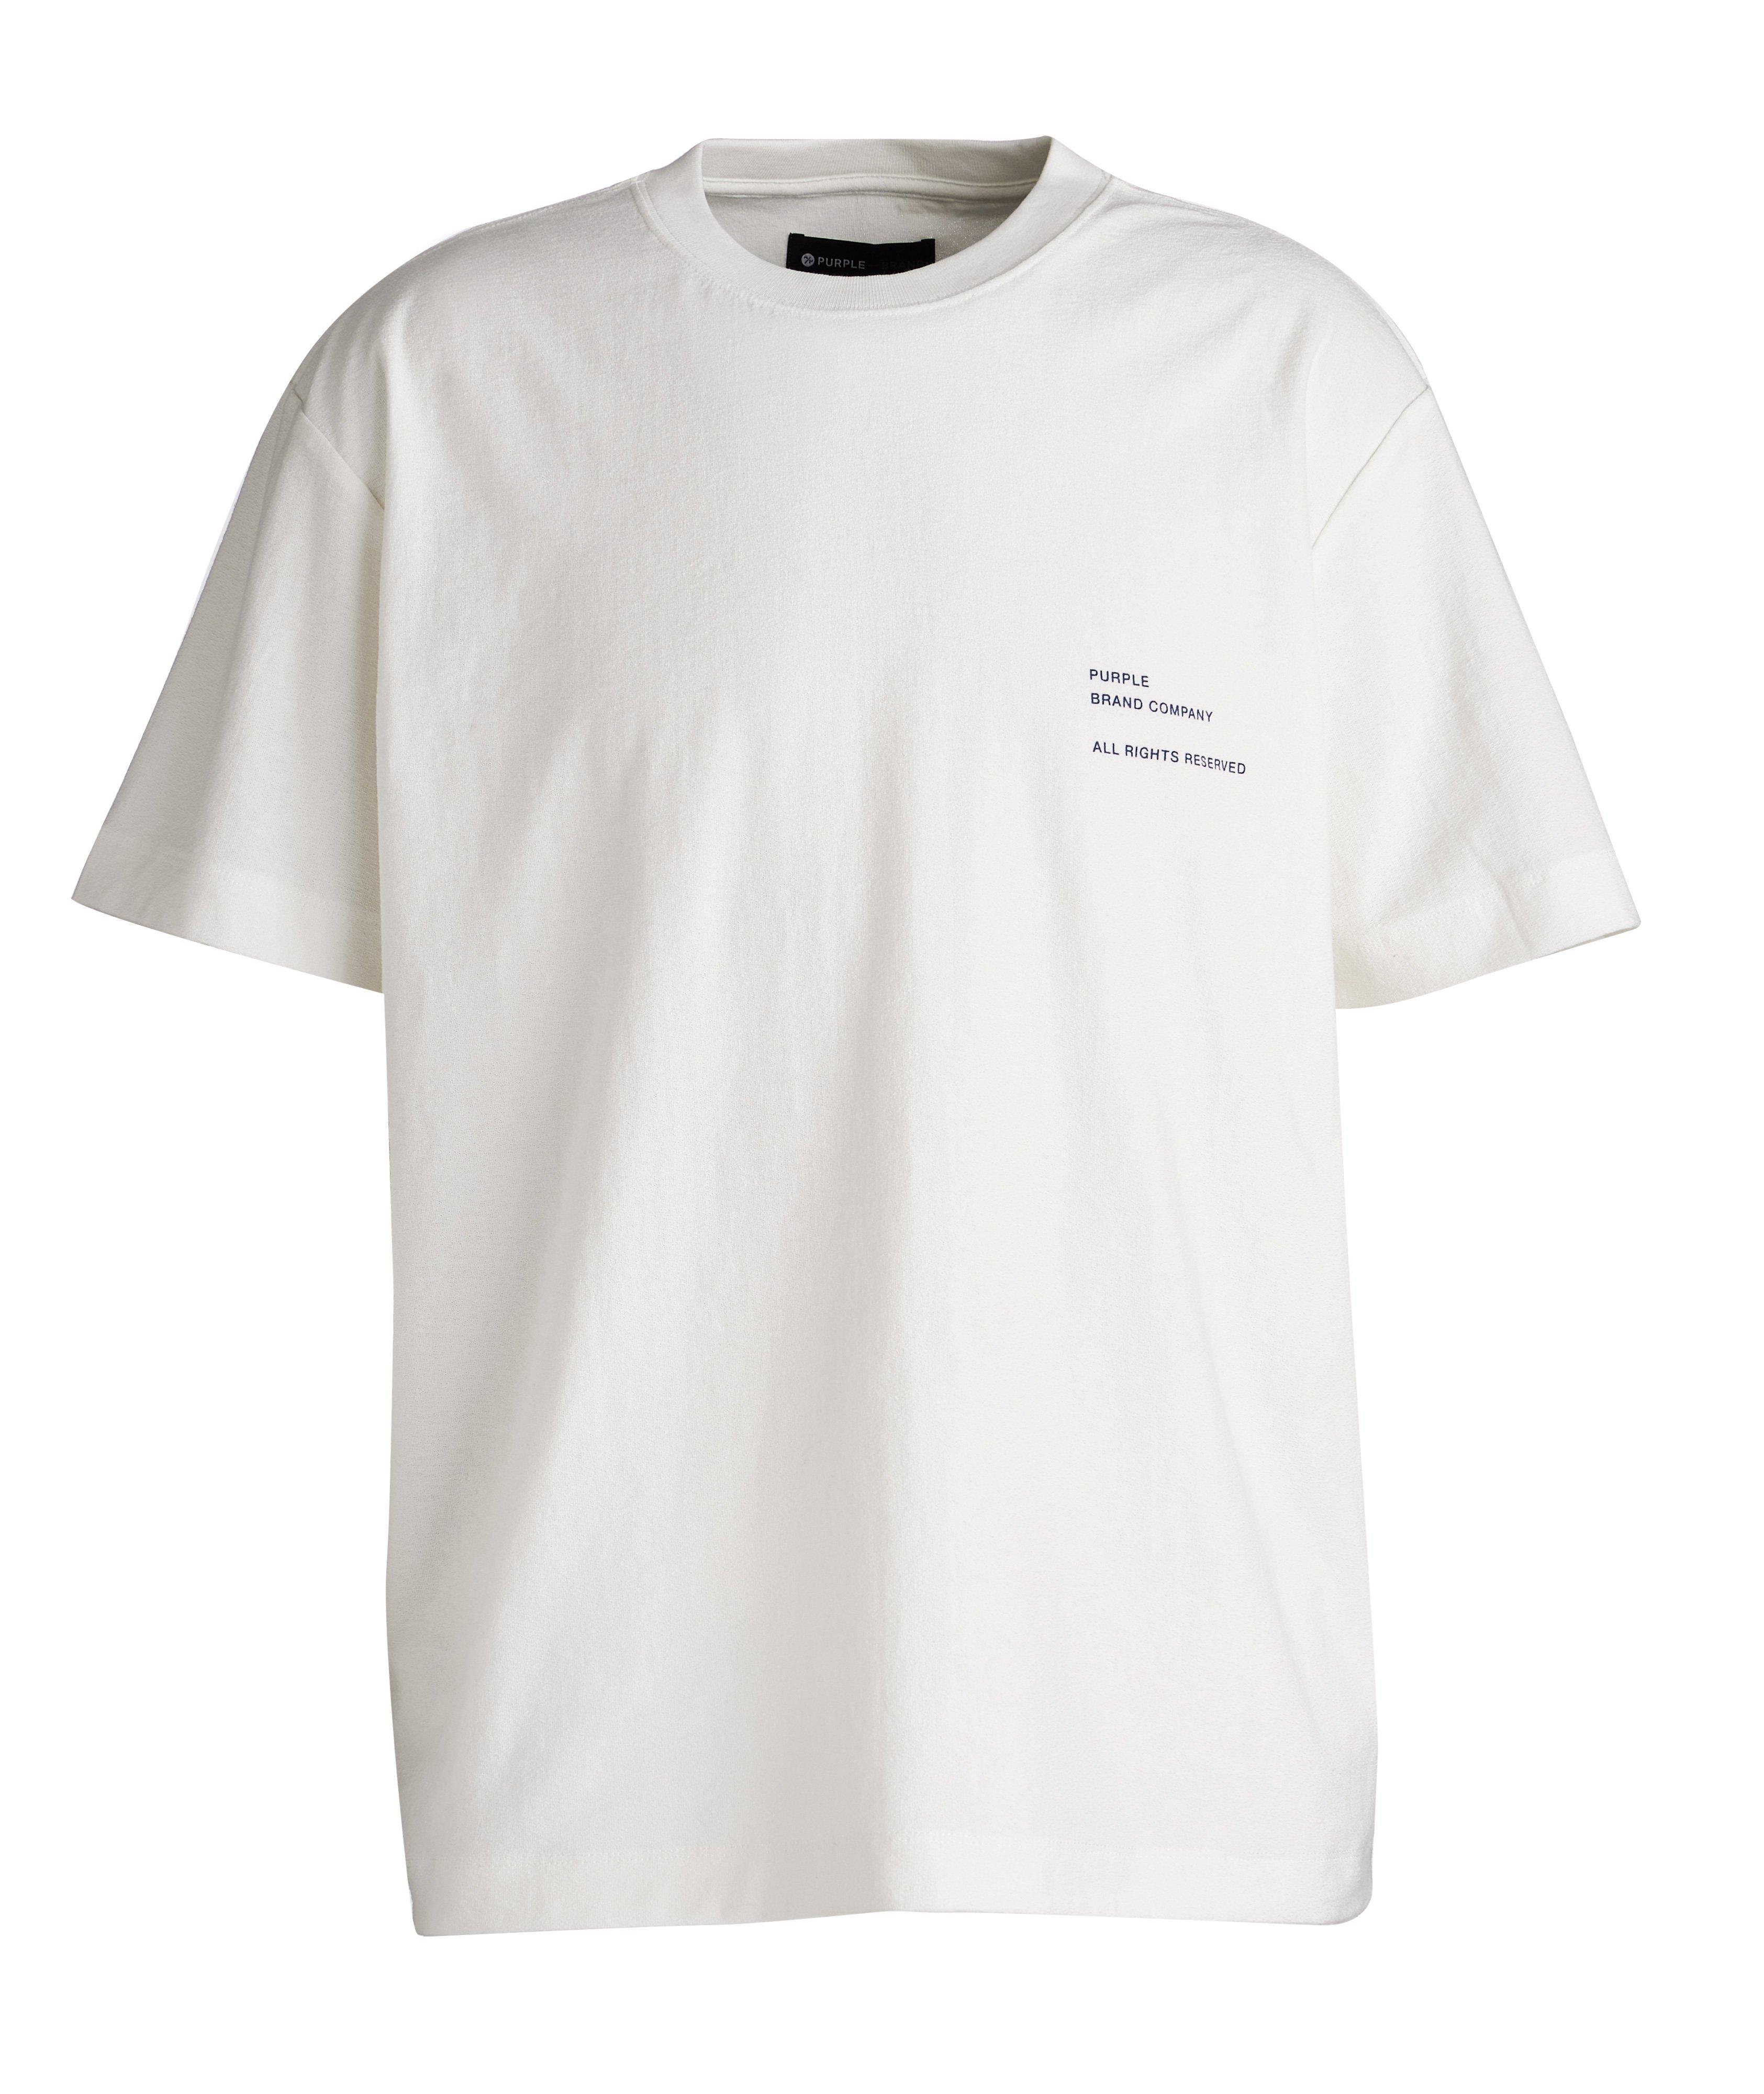 T-shirt P104 en tissu bouclé avec logos image 0